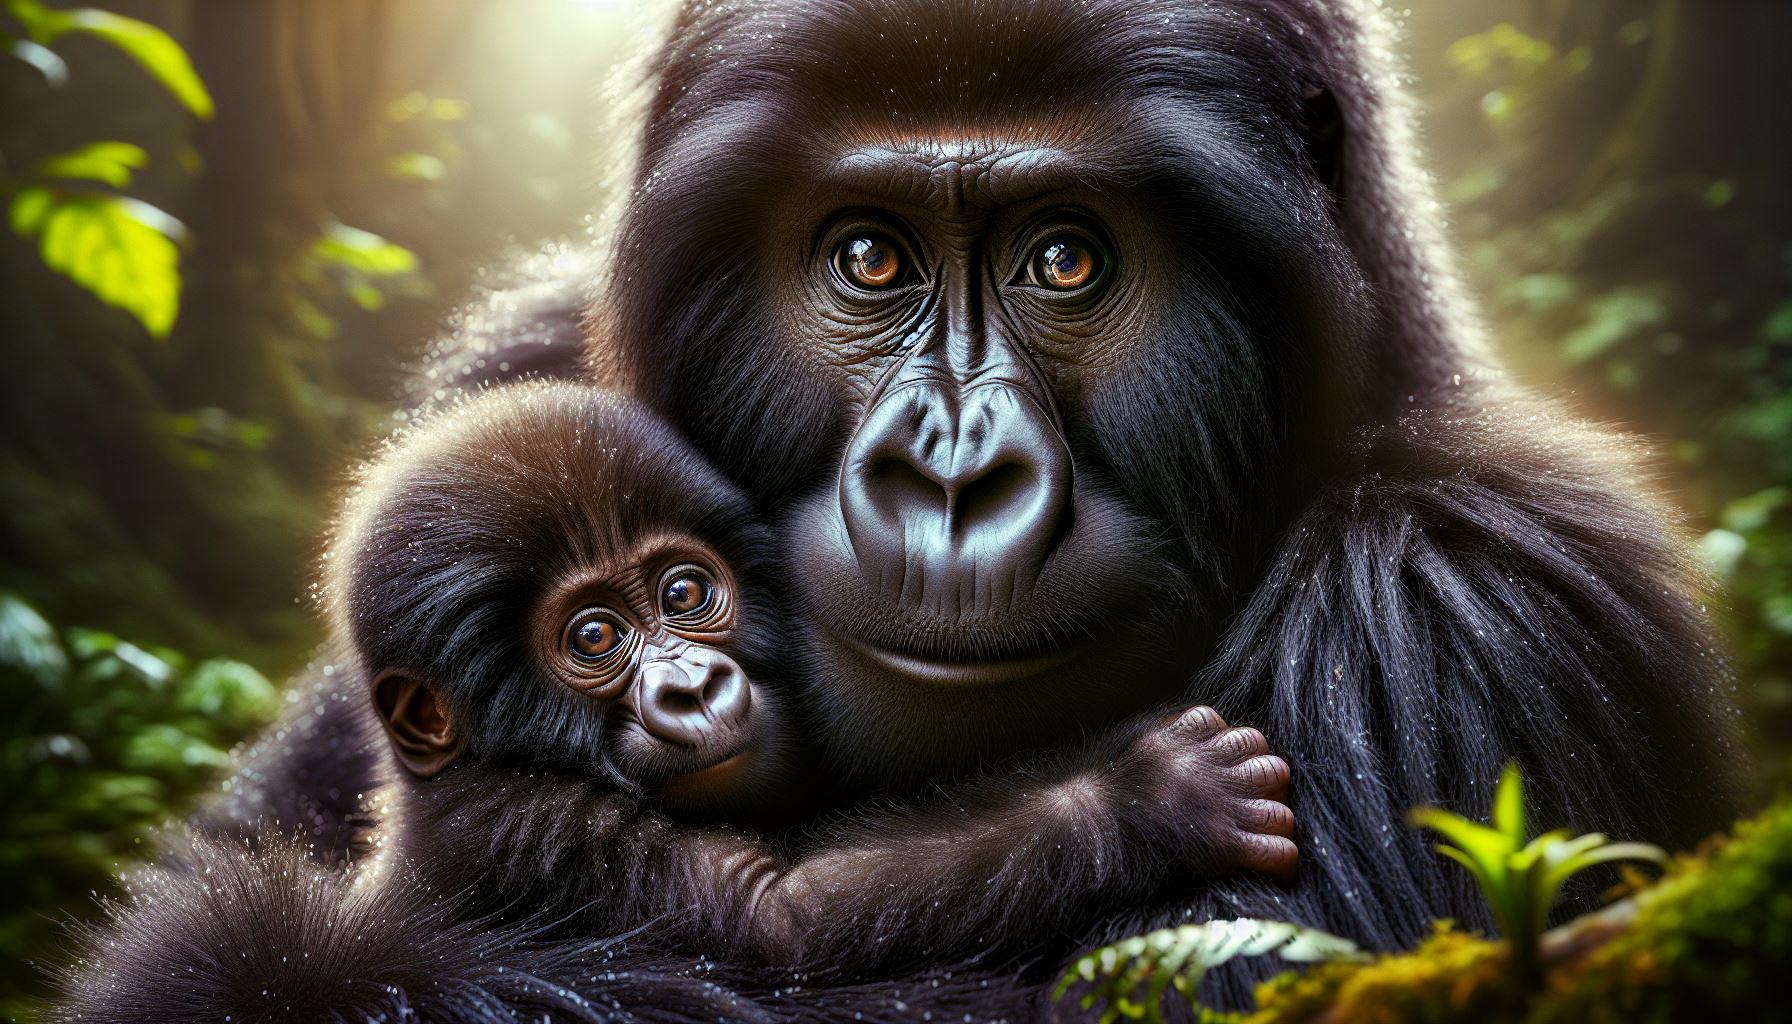 Gorilla Mutter zeigt stolz ihr Baby